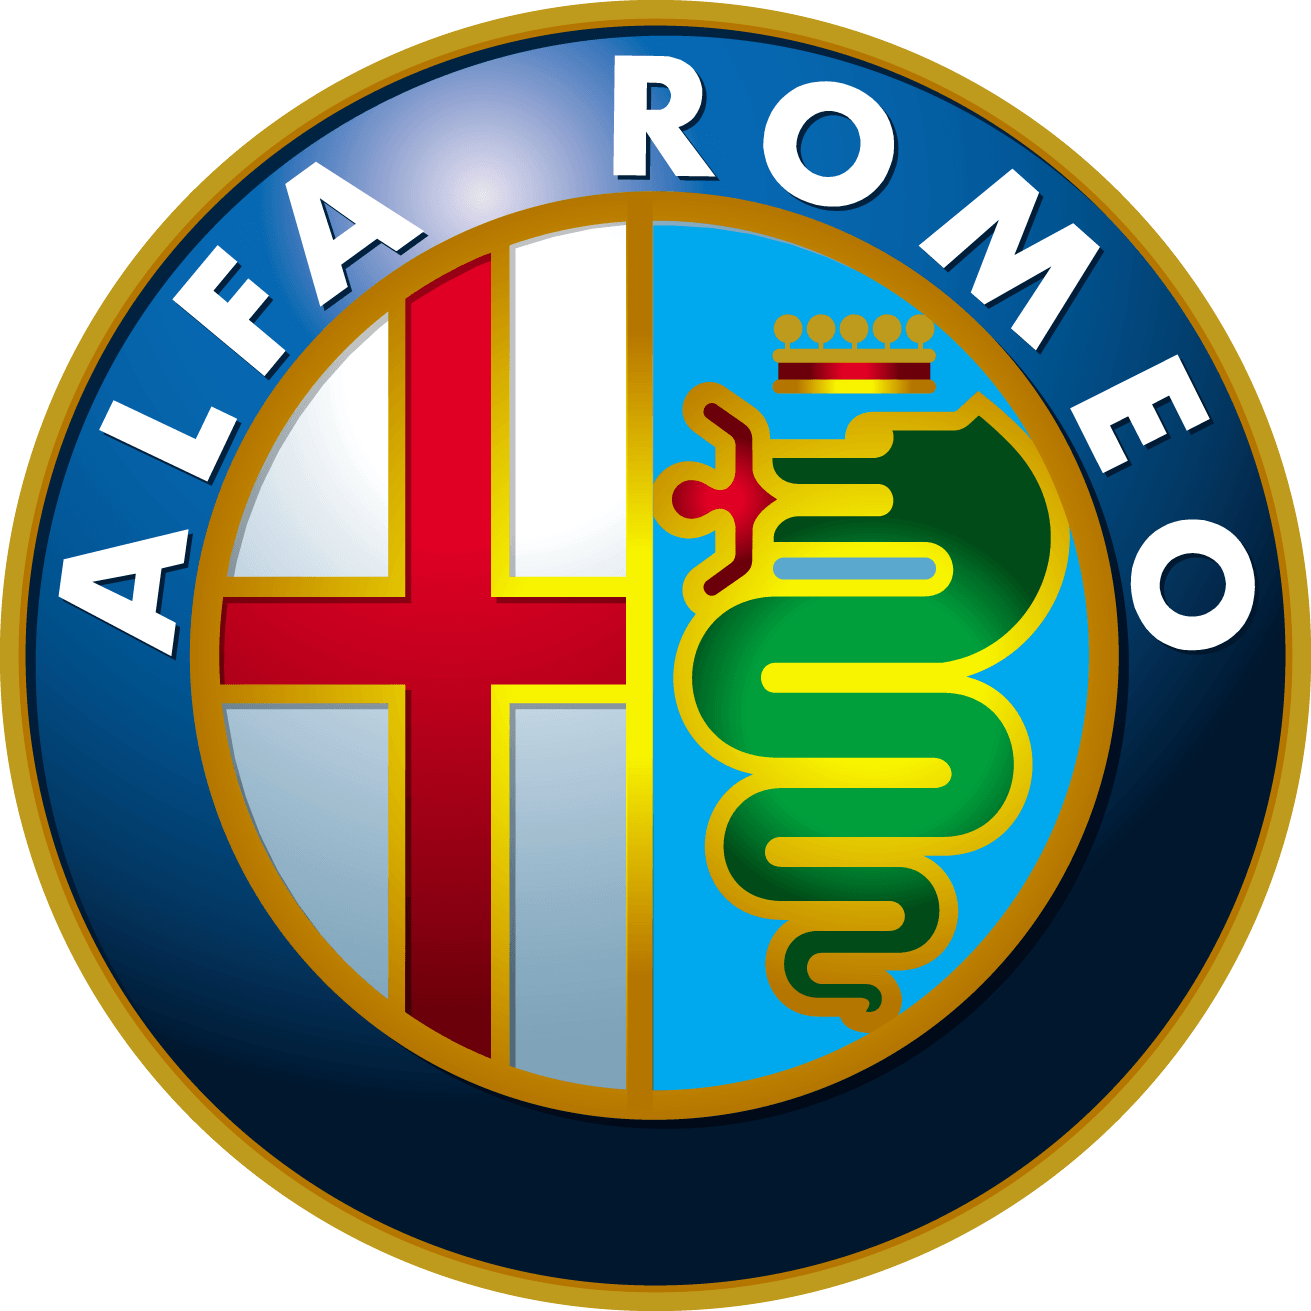 Alfa Romeo Car Logo Png Brand Image PNG Image